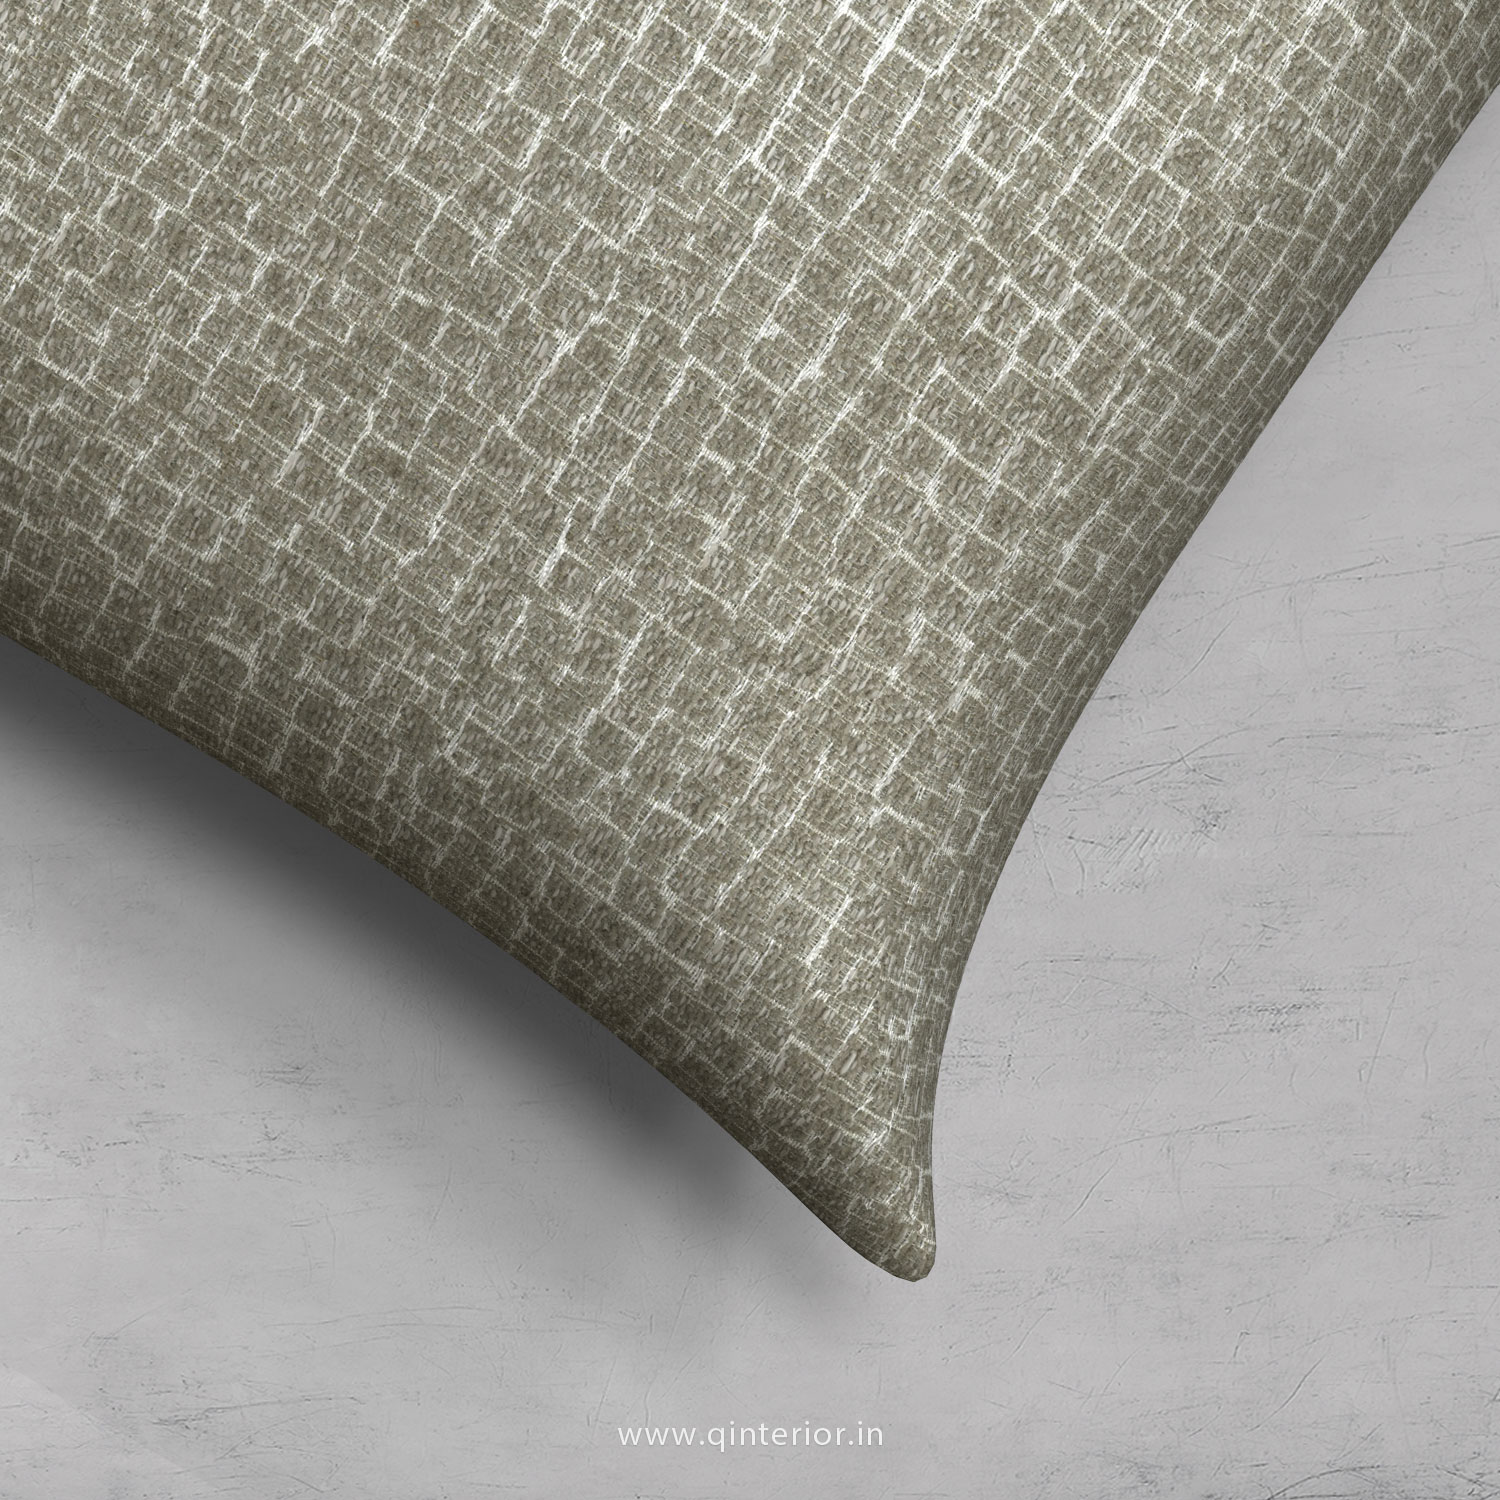 Cushion With Cushion Cover in Jacquard - CUS001 JQ31